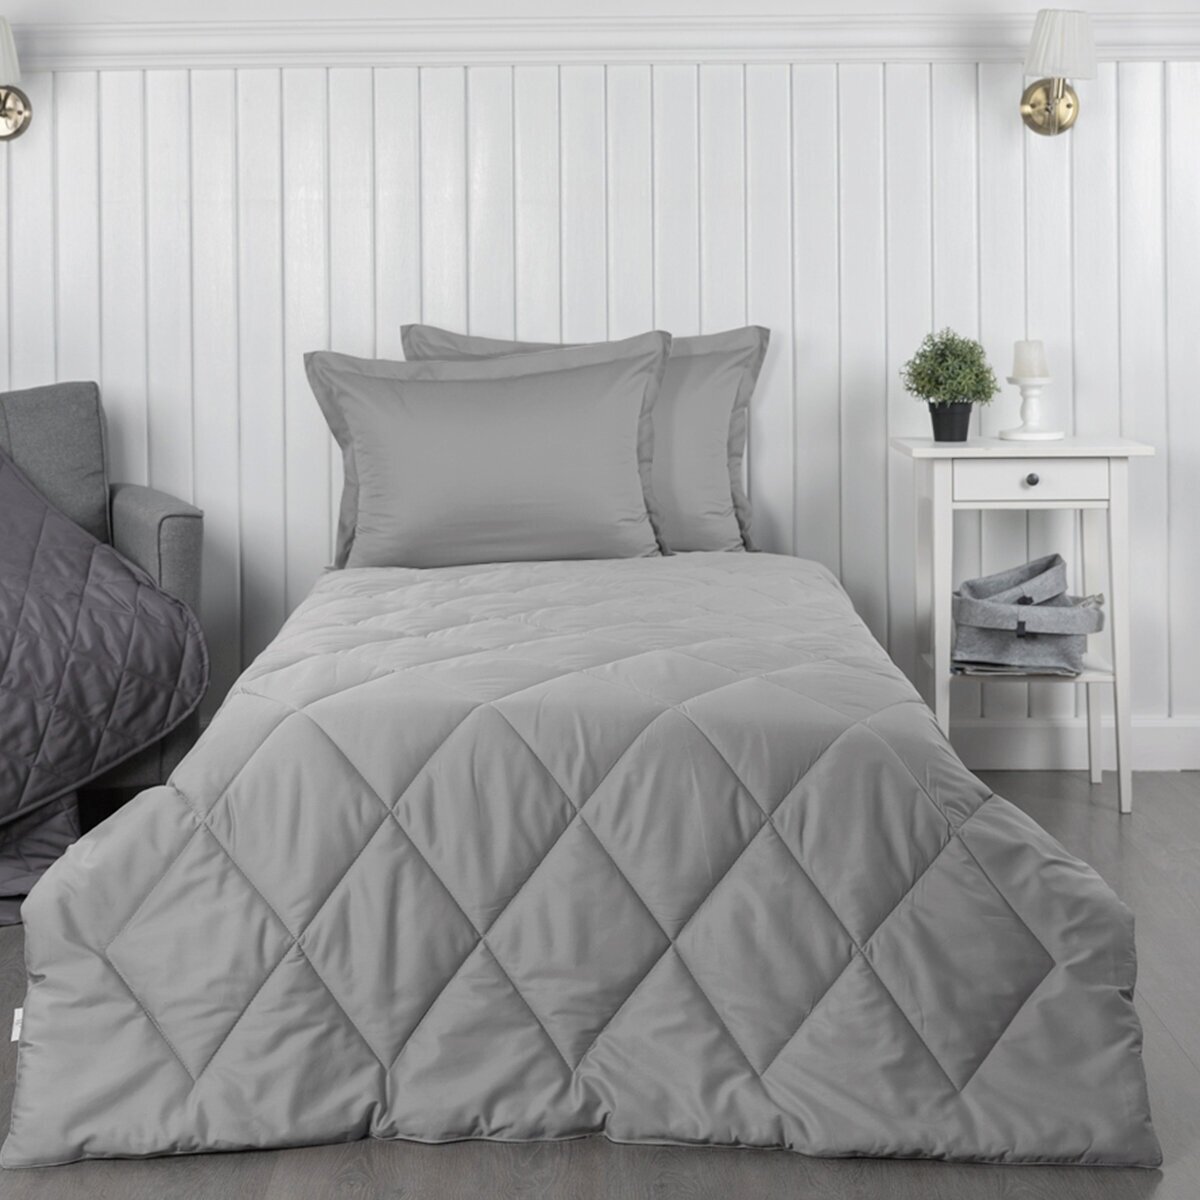 Комплект постельного белья La Prima постельное бельё сатин С одеялом 2 наволочки серебристая дымка, размер 140 х 205 см